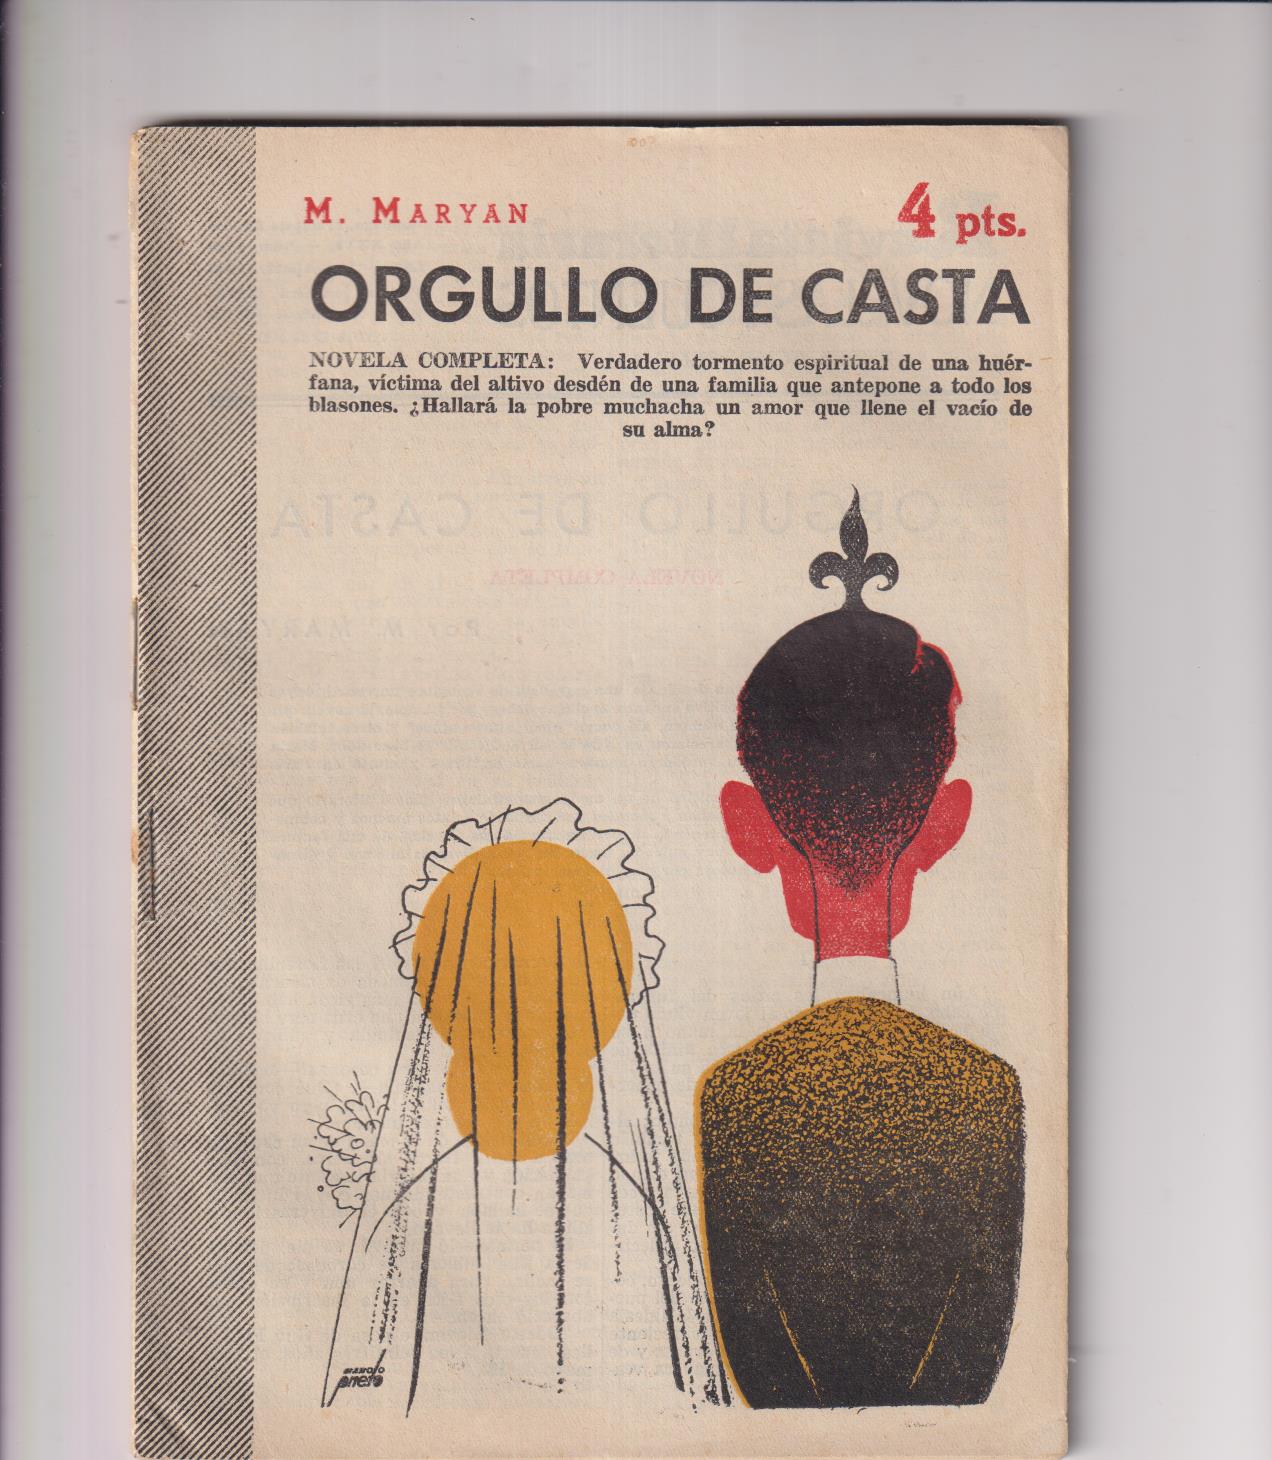 Revista Literaria Novelas y Cuentos nº 1215. M. Maryan. Orgullo de casta . Año 1954